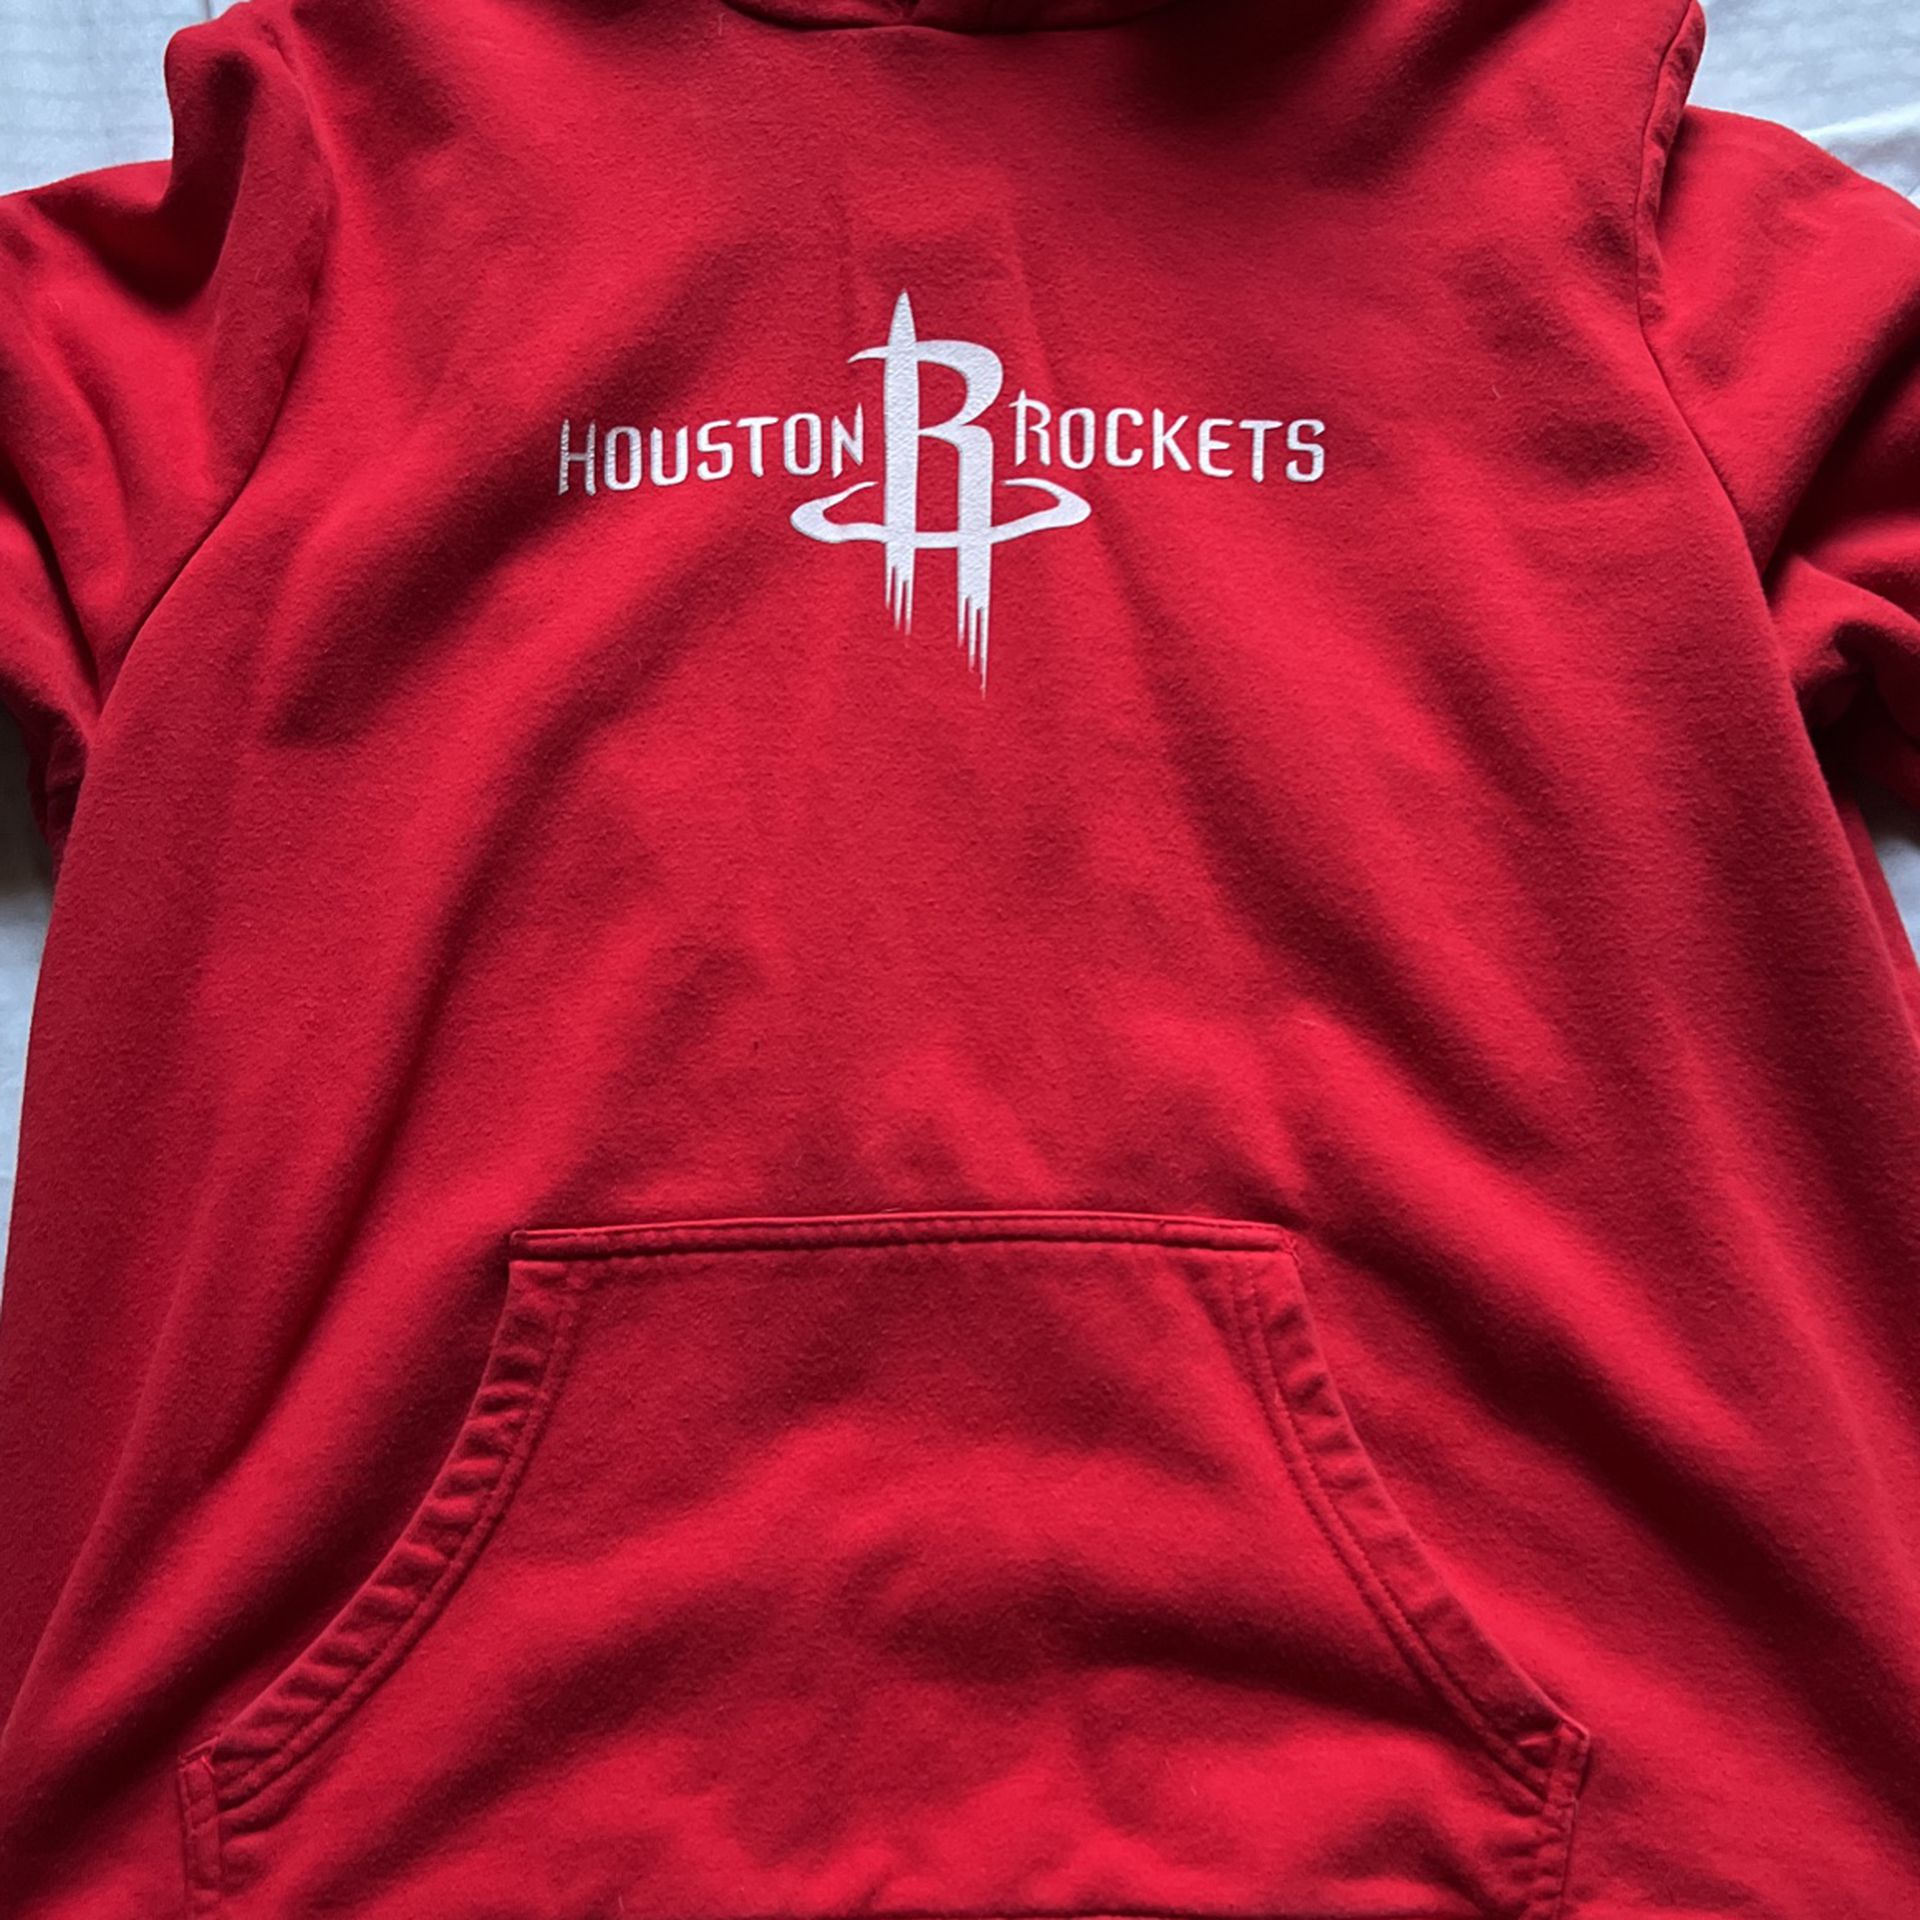 James Harden Rockets Sweatshirt 